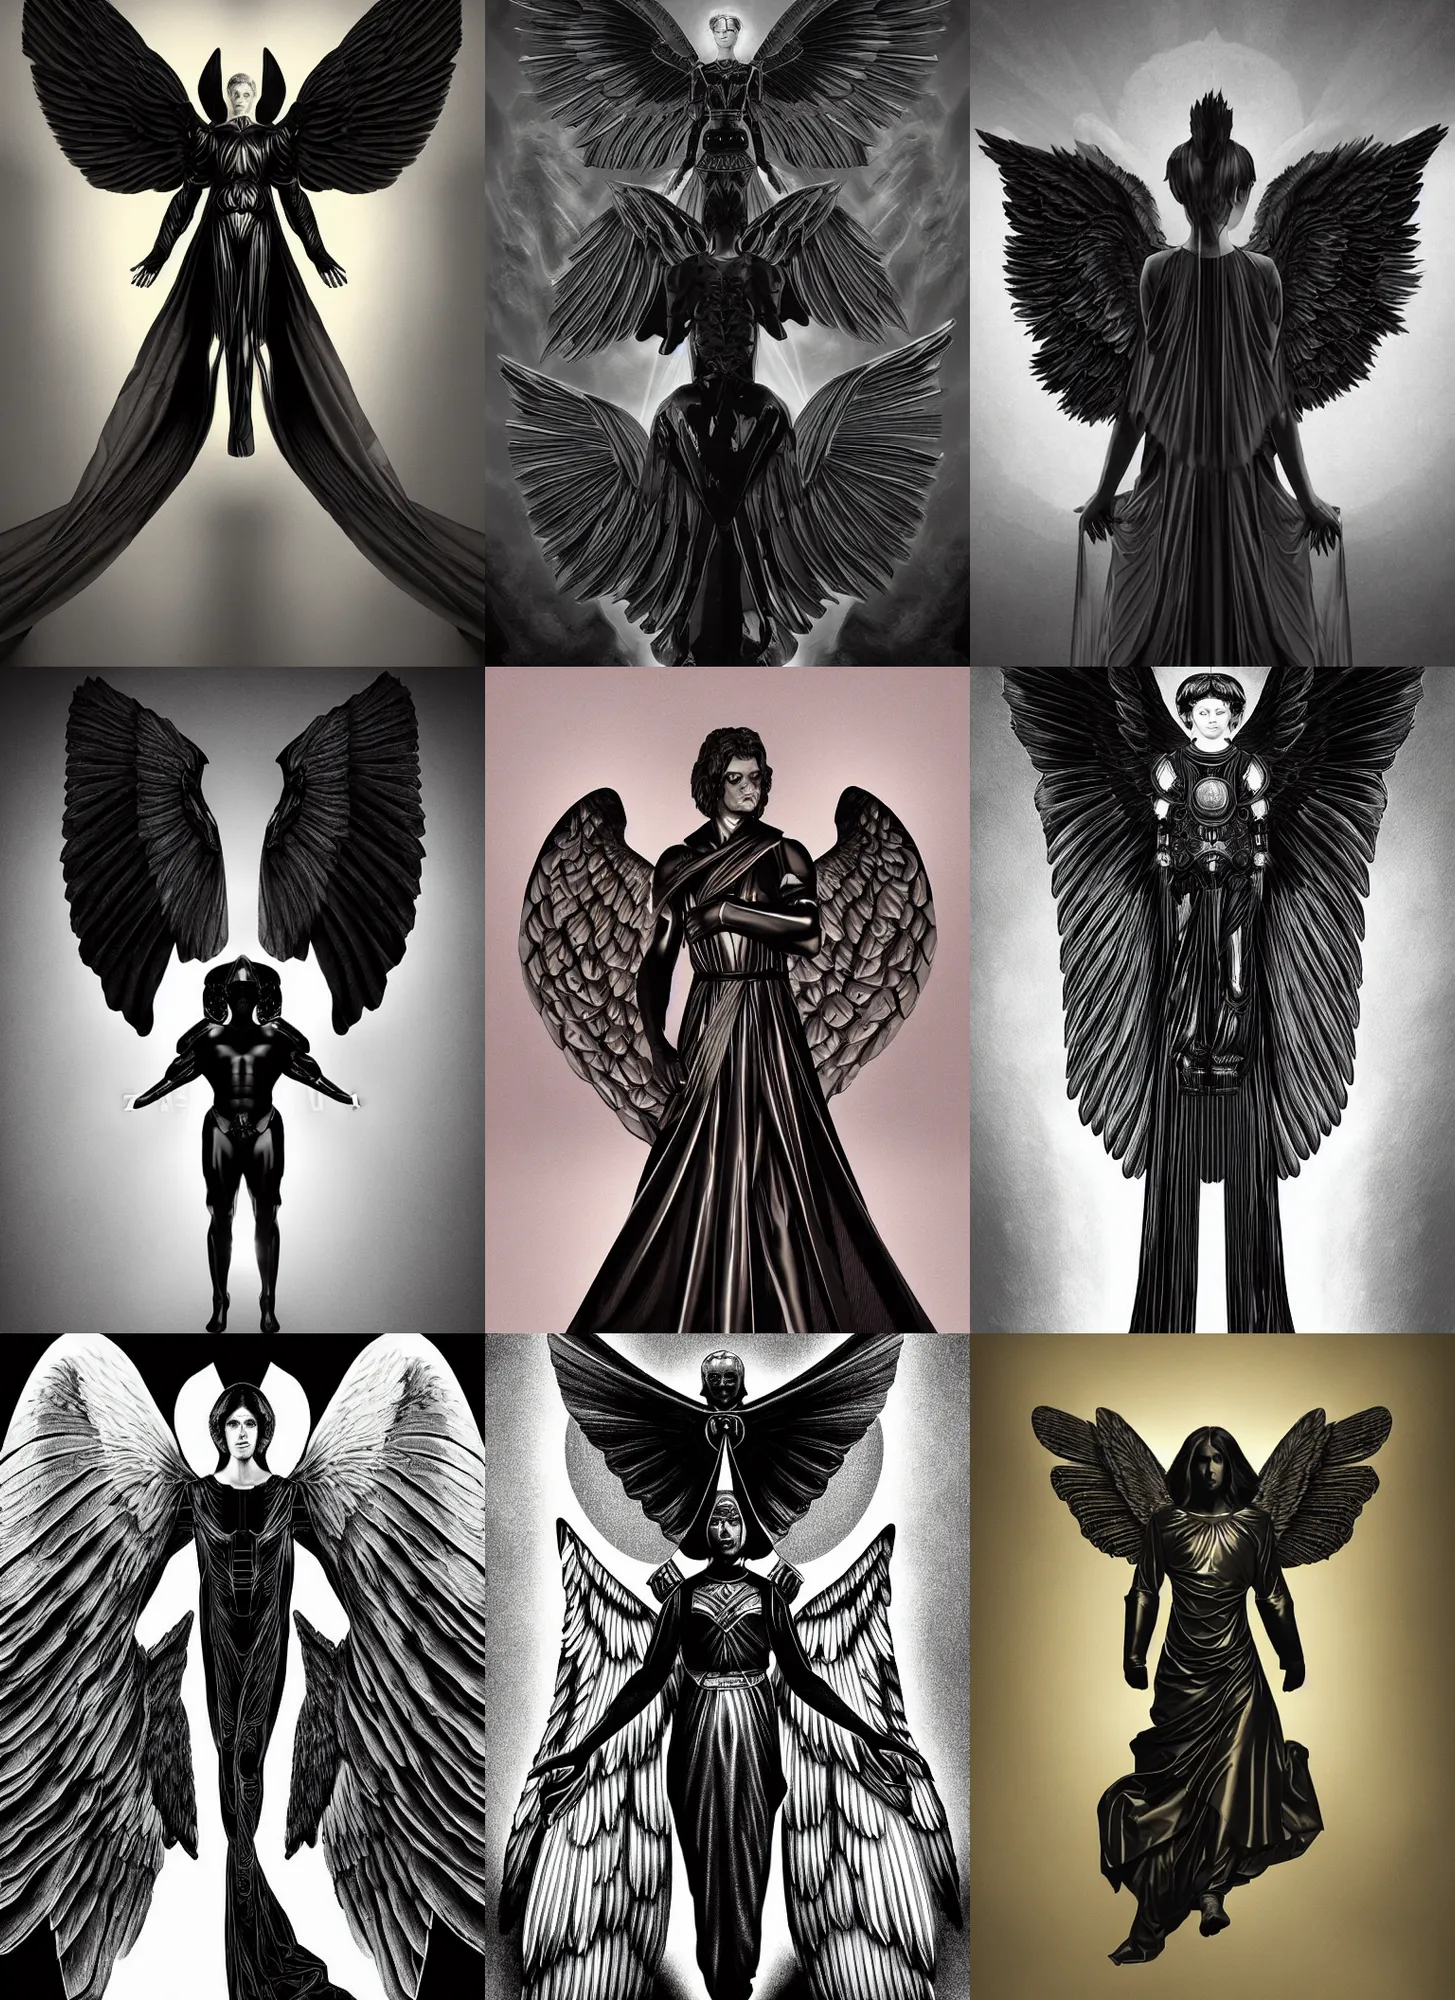 Prompt: portrait of an angel in heaven, huge black symmetric wings, obsidian black armor, balance, by frank franzzeta, digital illustration, chiaroscuro